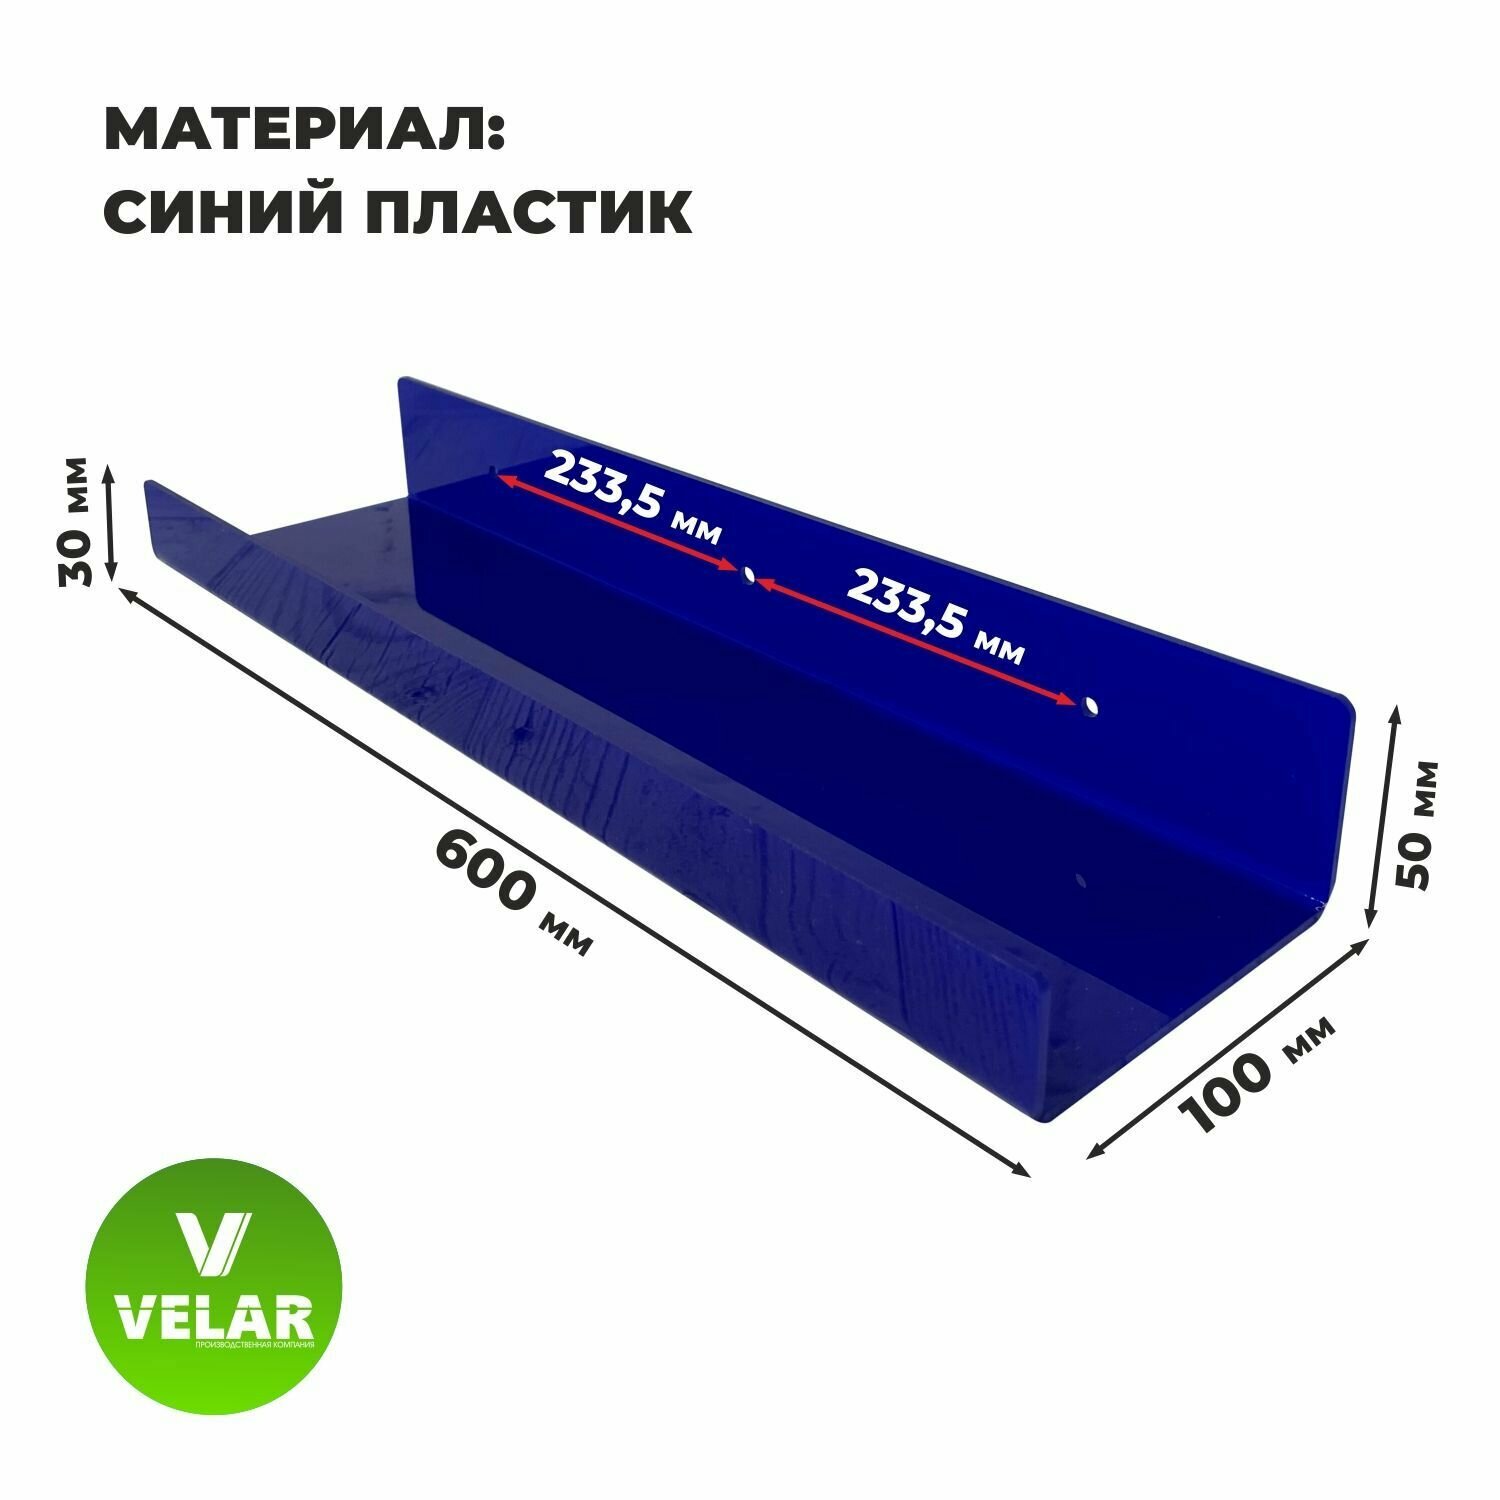 Полка настенная прямая интерьерная, 60х10.5 см, 1 шт, пластик 3 мм, цвет синий, Velar